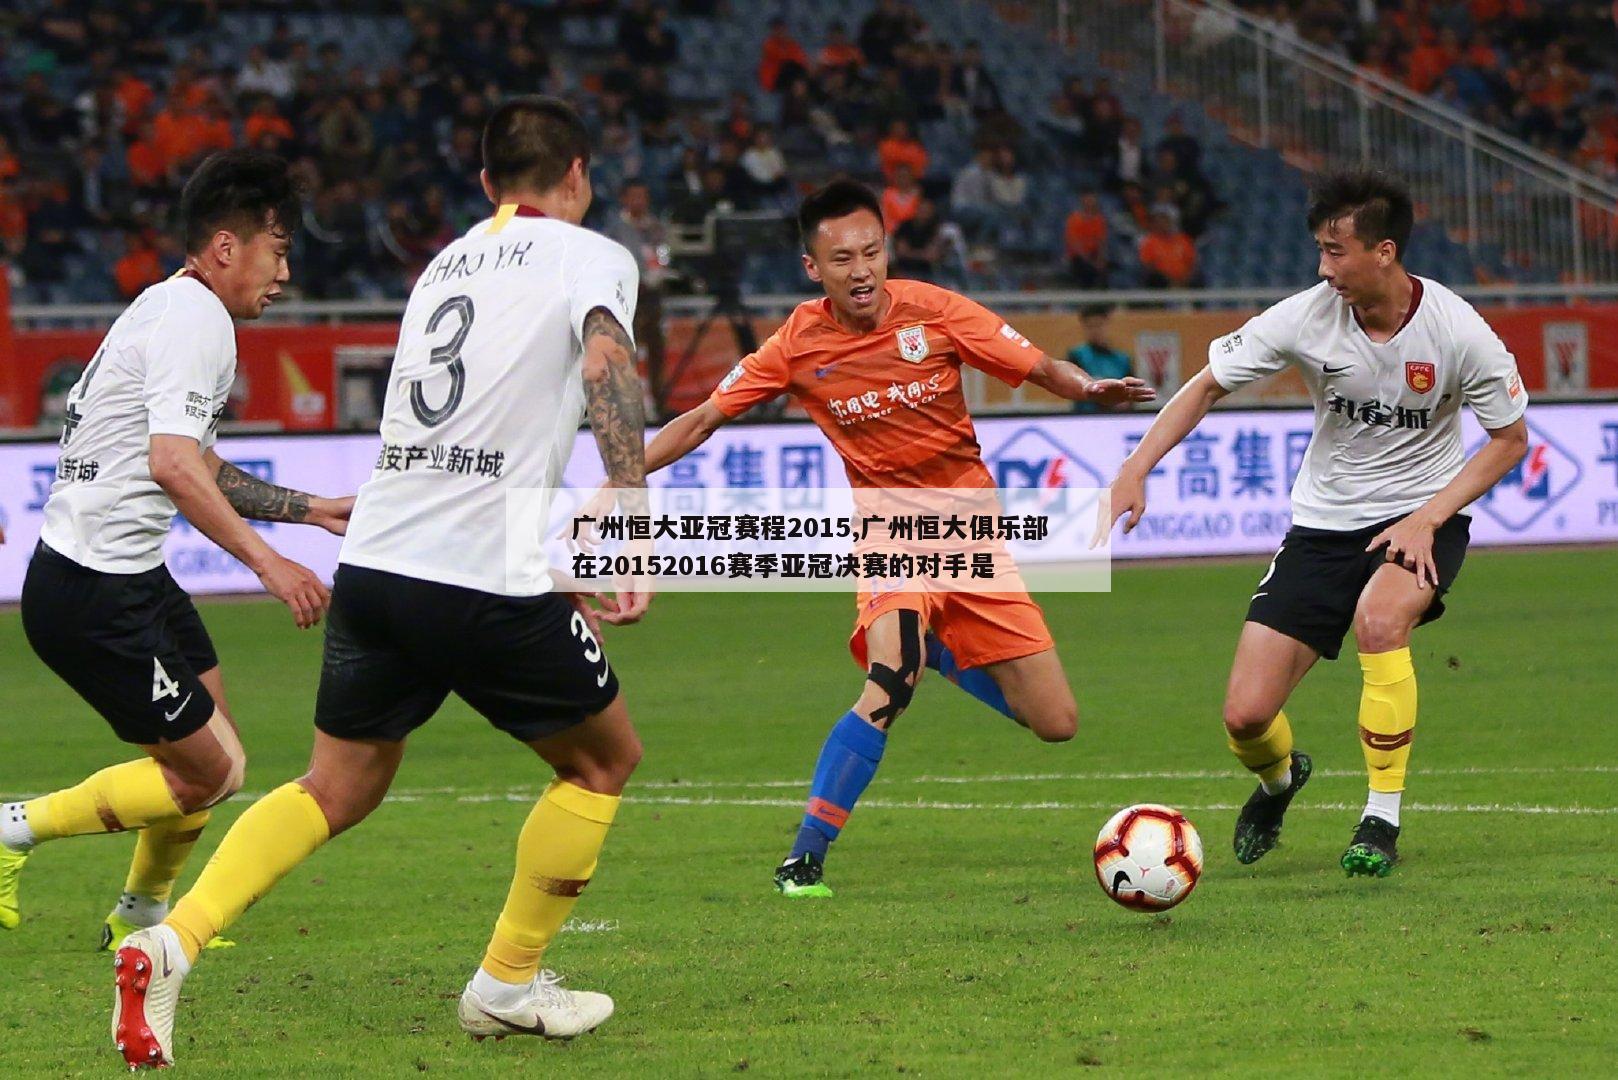 广州恒大亚冠赛程2015,广州恒大俱乐部在20152016赛季亚冠决赛的对手是